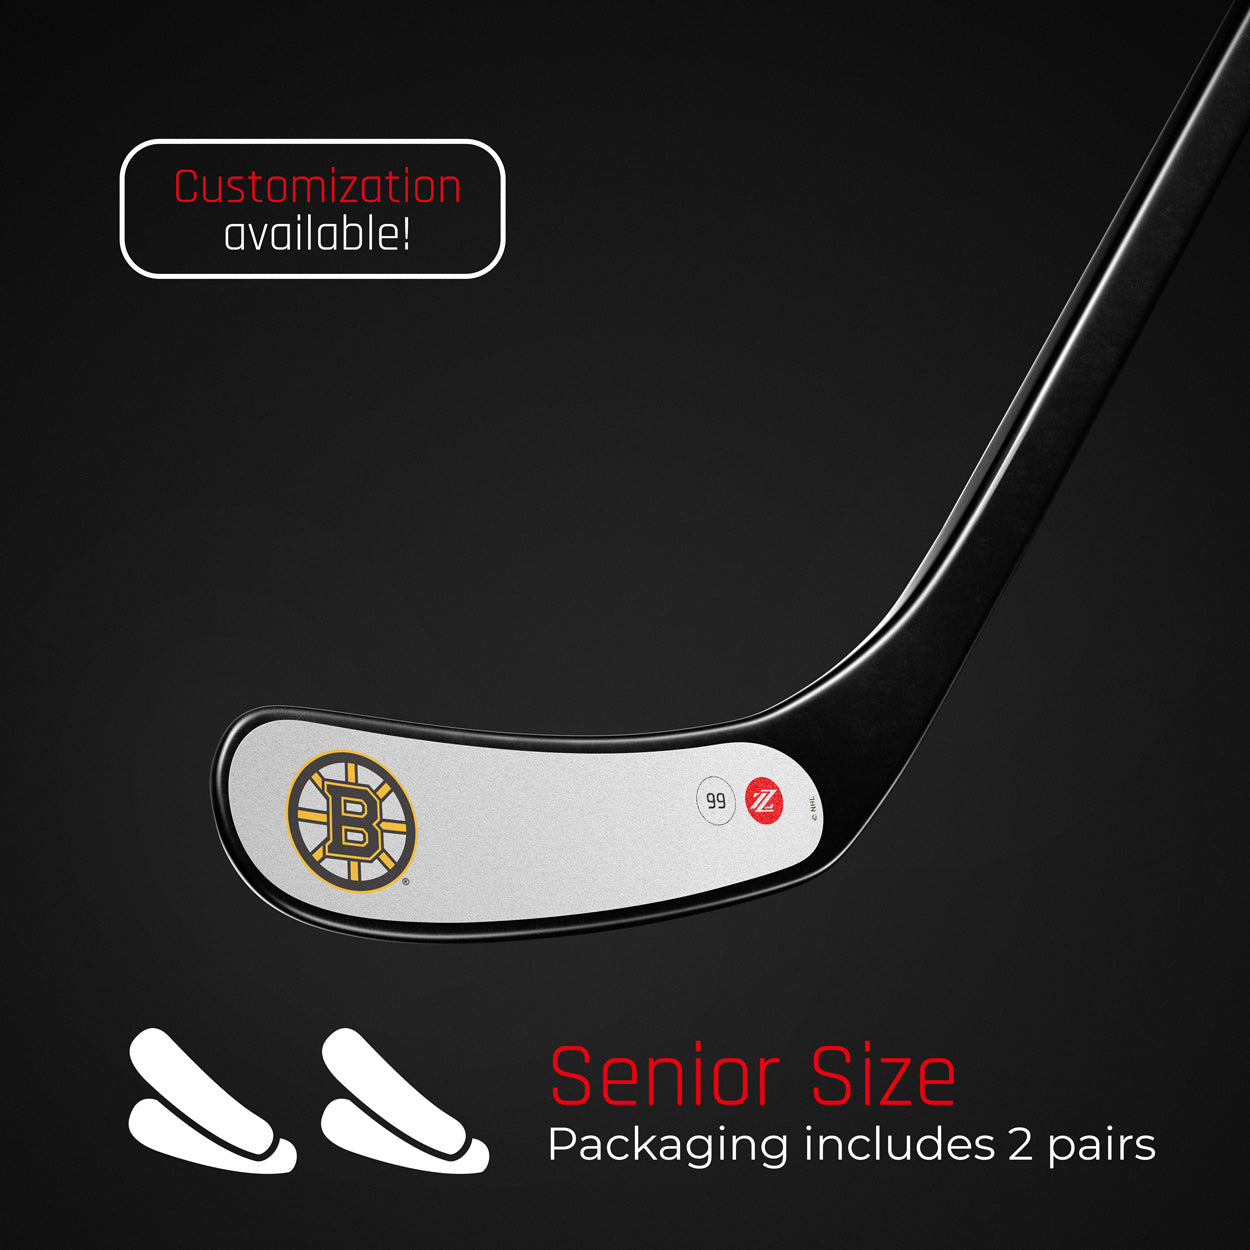 Rezztek® Doublepack Player NHL Edition Senior - White